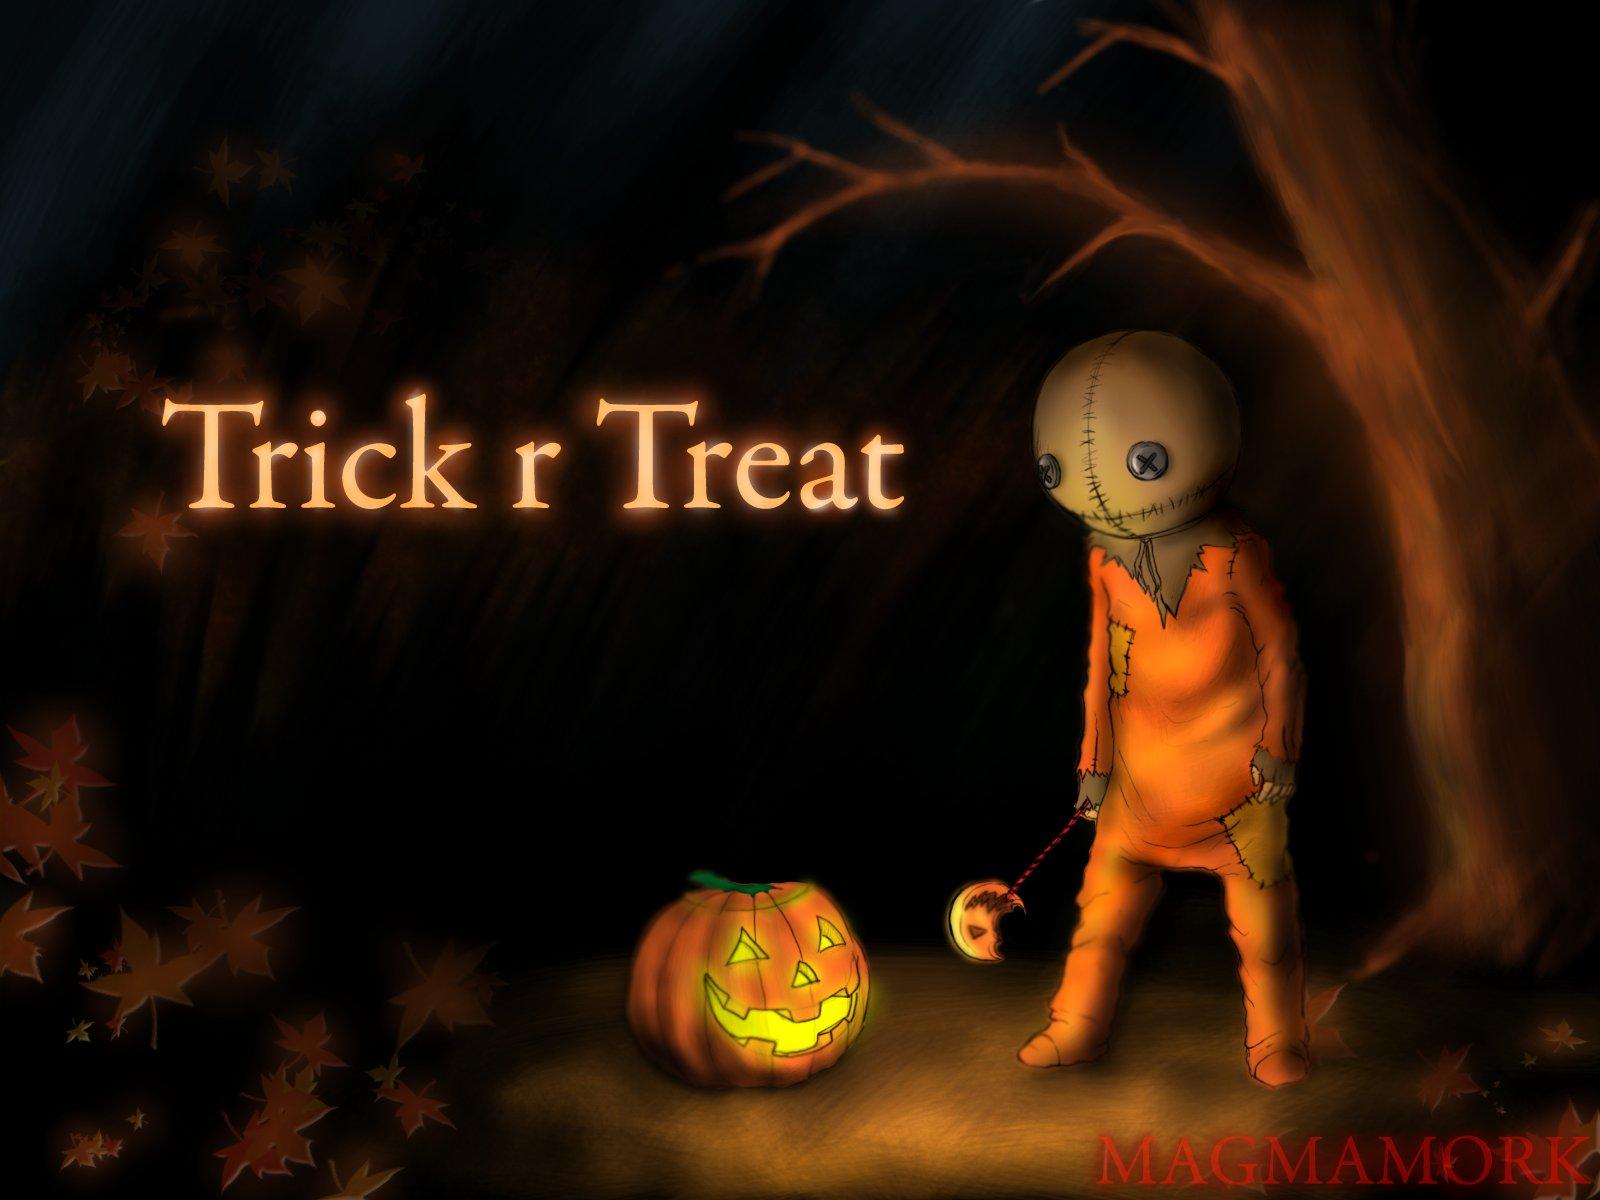 TRICK R TREAT horror thriller dark halloween movie film 2